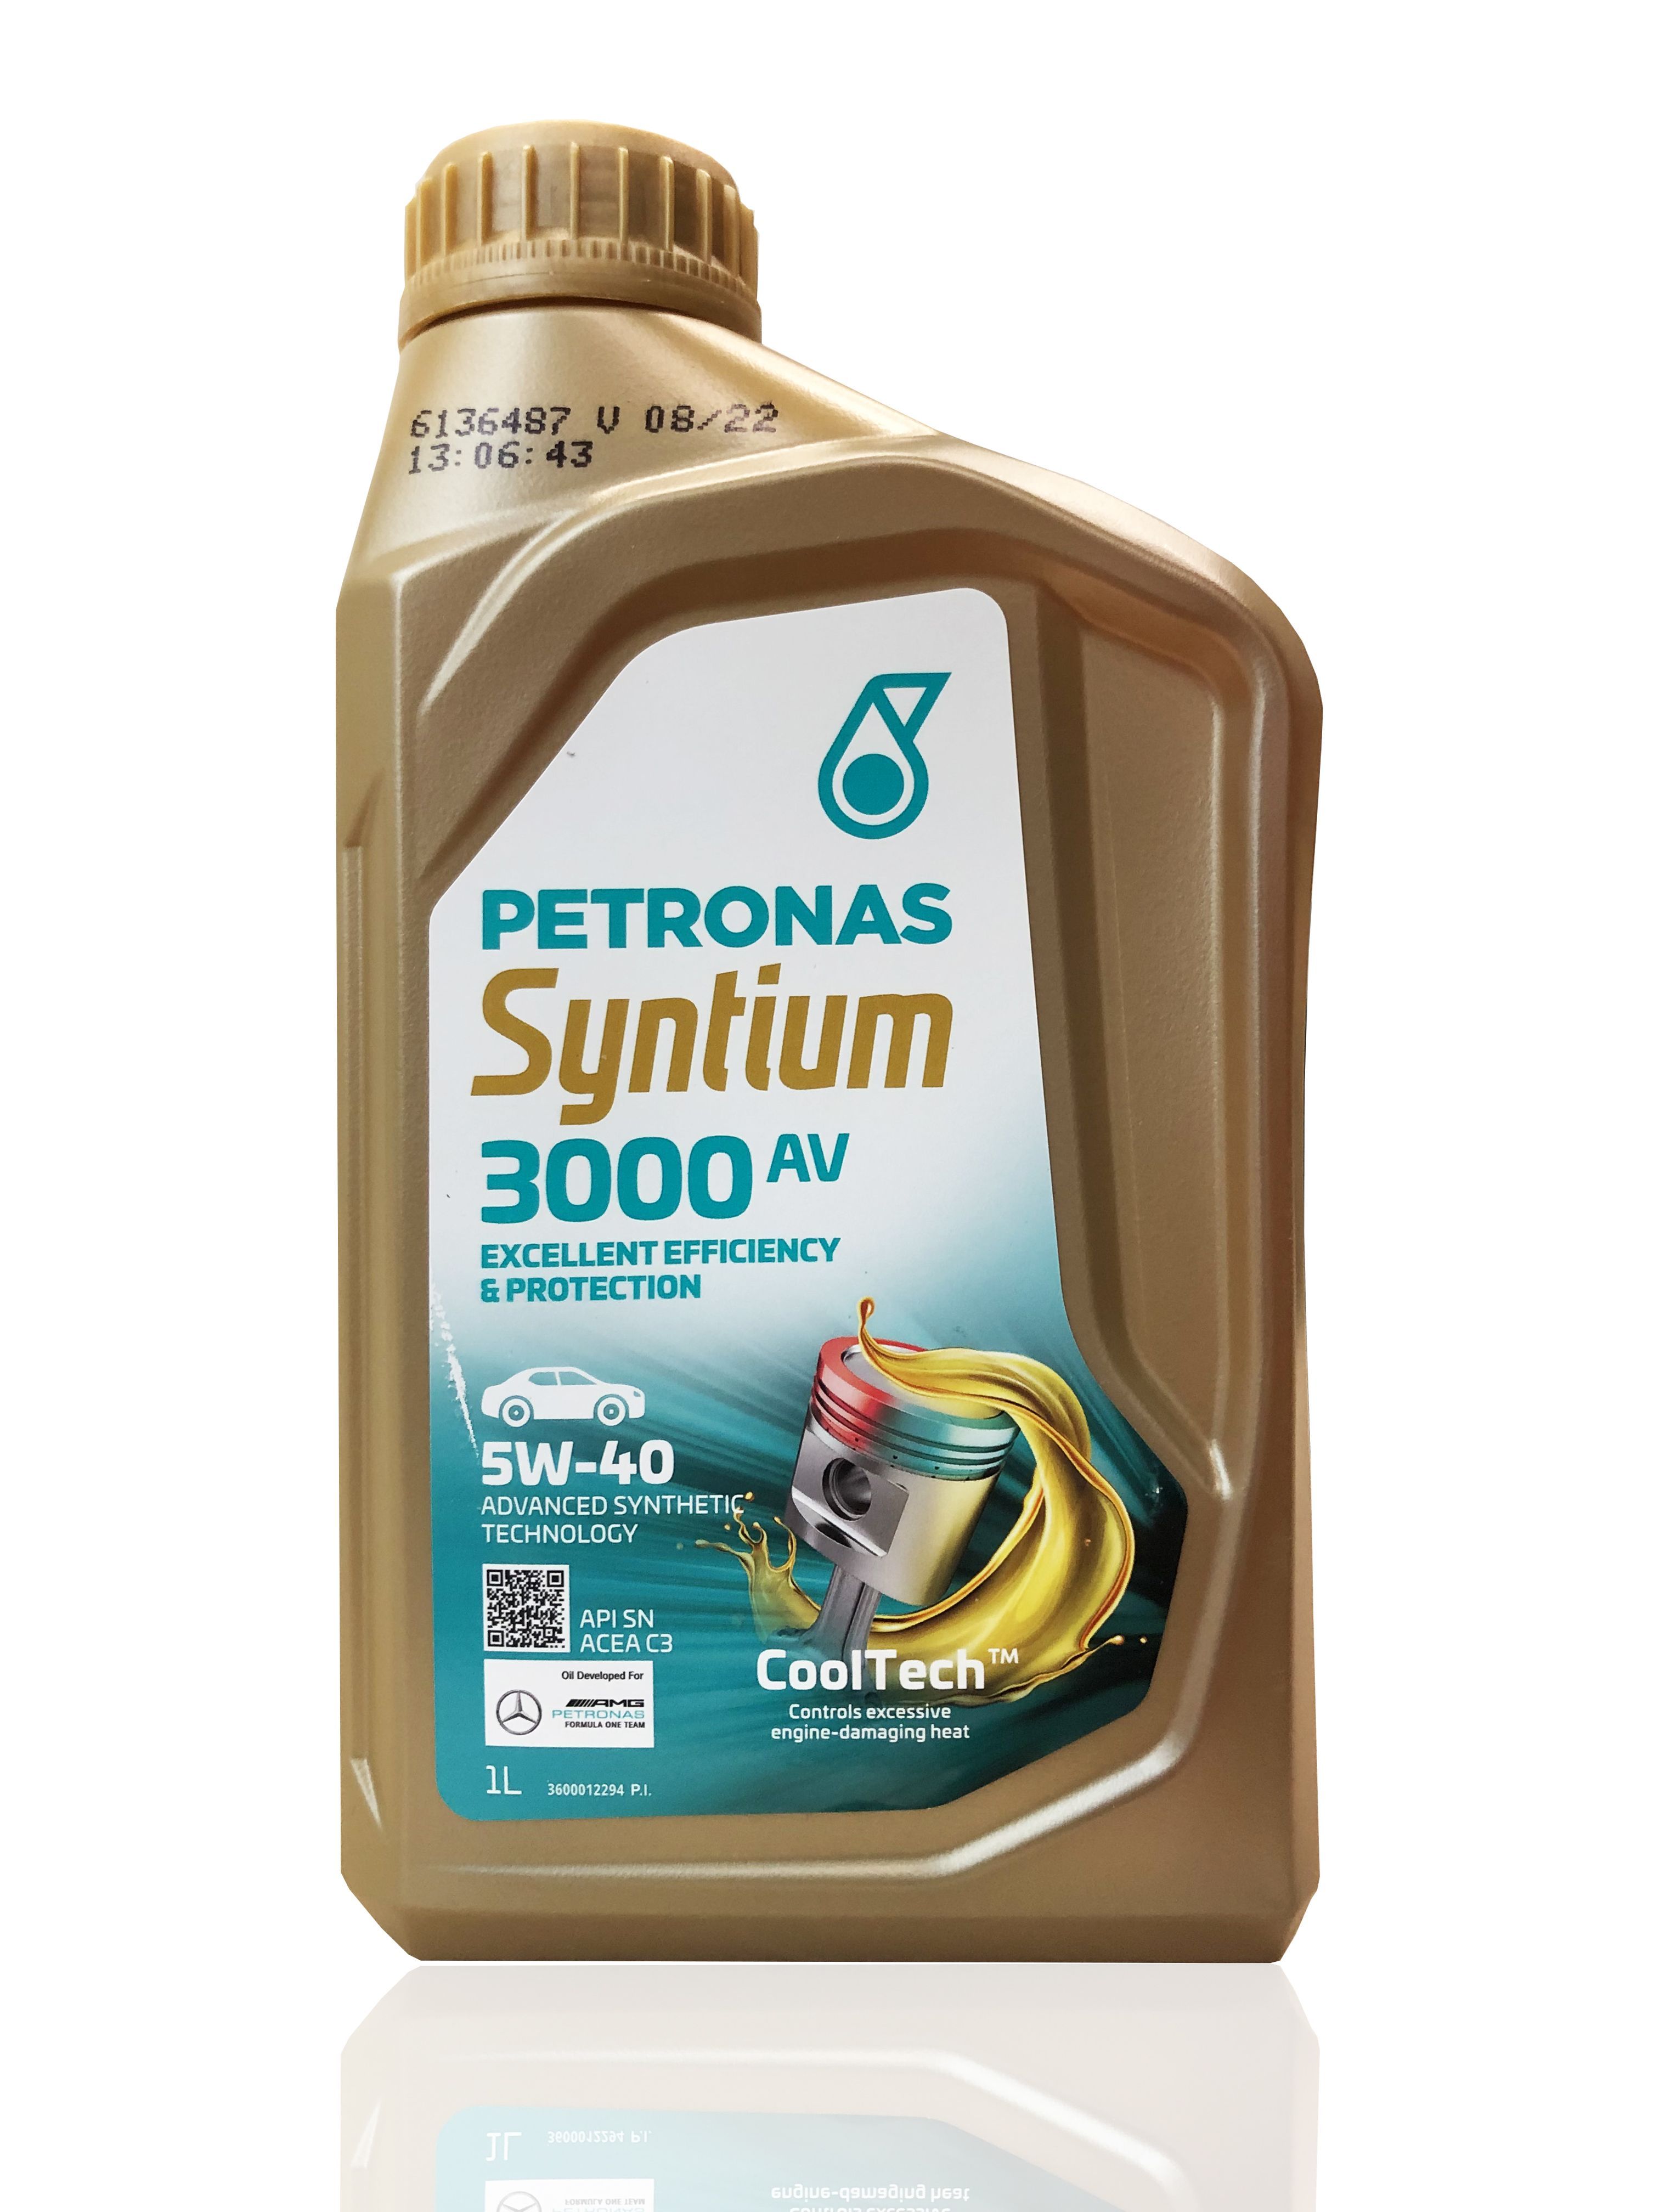 Petronas 5000 av. Petronas Syntium 3000 fr 5w-30. Petronas Syntium 3000 av 5w40. Petronas Syntium 5/40. Petronas Syntium 3000 e 5w30.